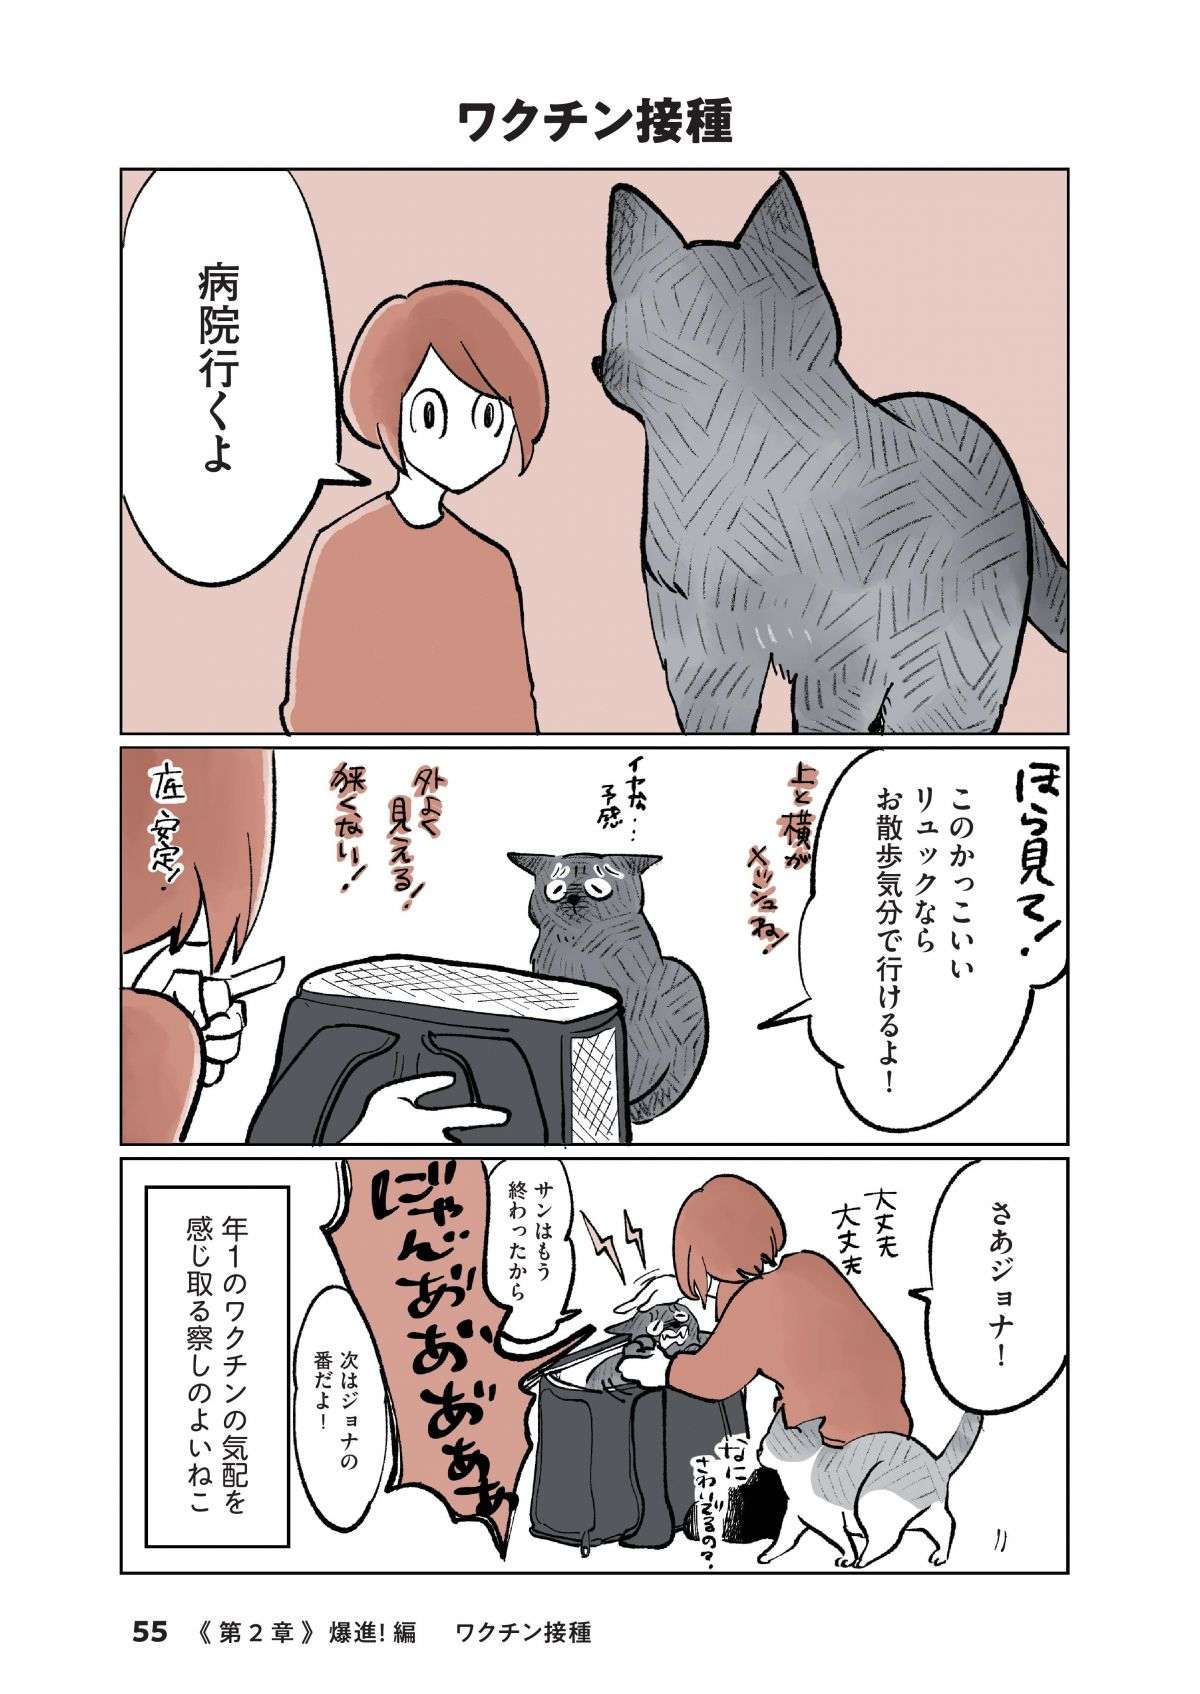 ビビリ猫、注射が怖くて「頭隠して尻隠さず」かわいすぎるワクチン注射奮闘記 ／こねこのドレイ koneko_dorei6-1.jpg